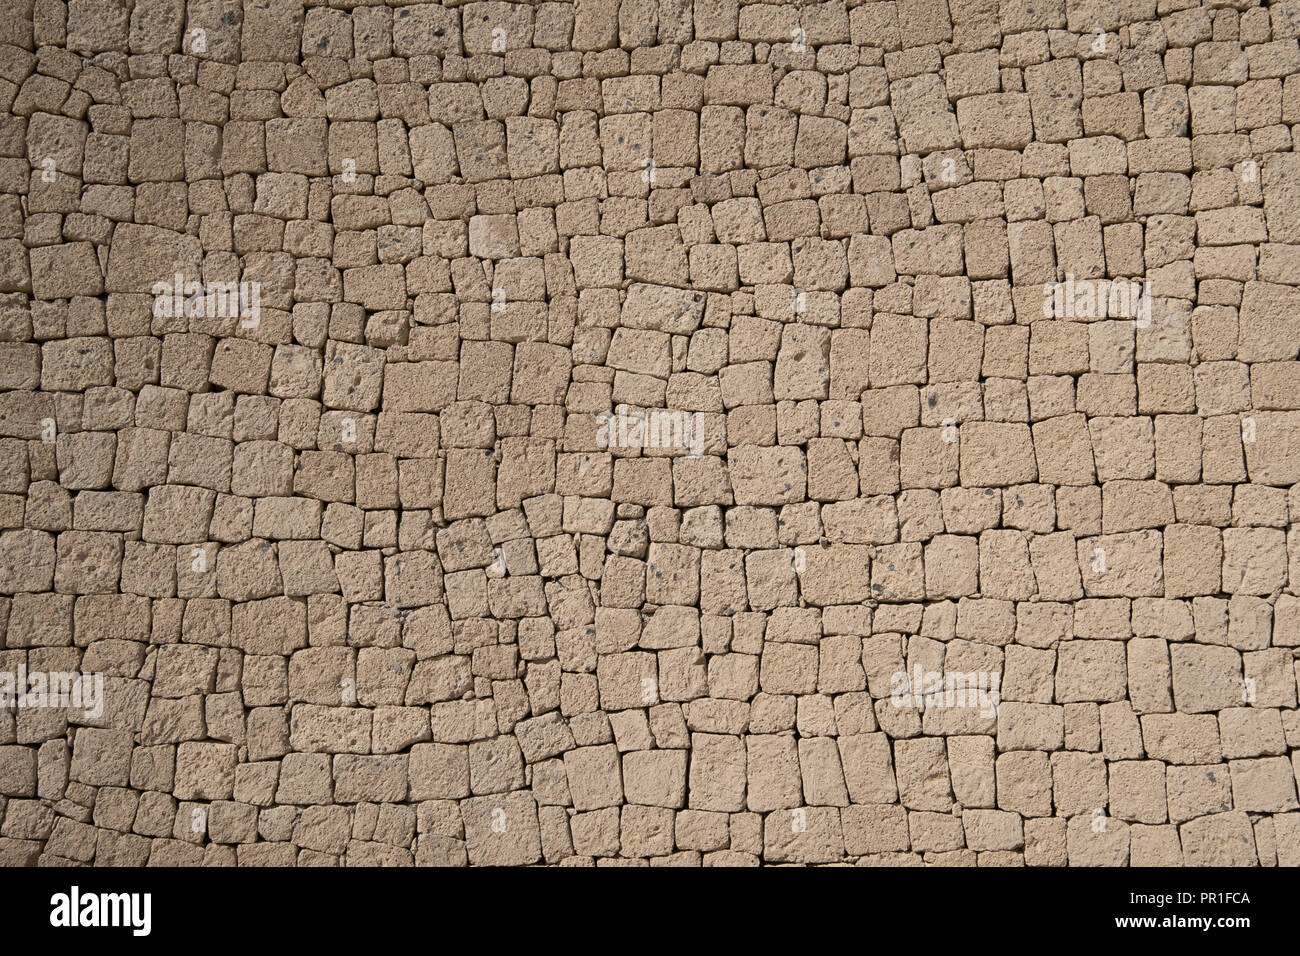 Mur de pierre ignimbrite - mur de pierres naturelles, d'arrière-plan Banque D'Images